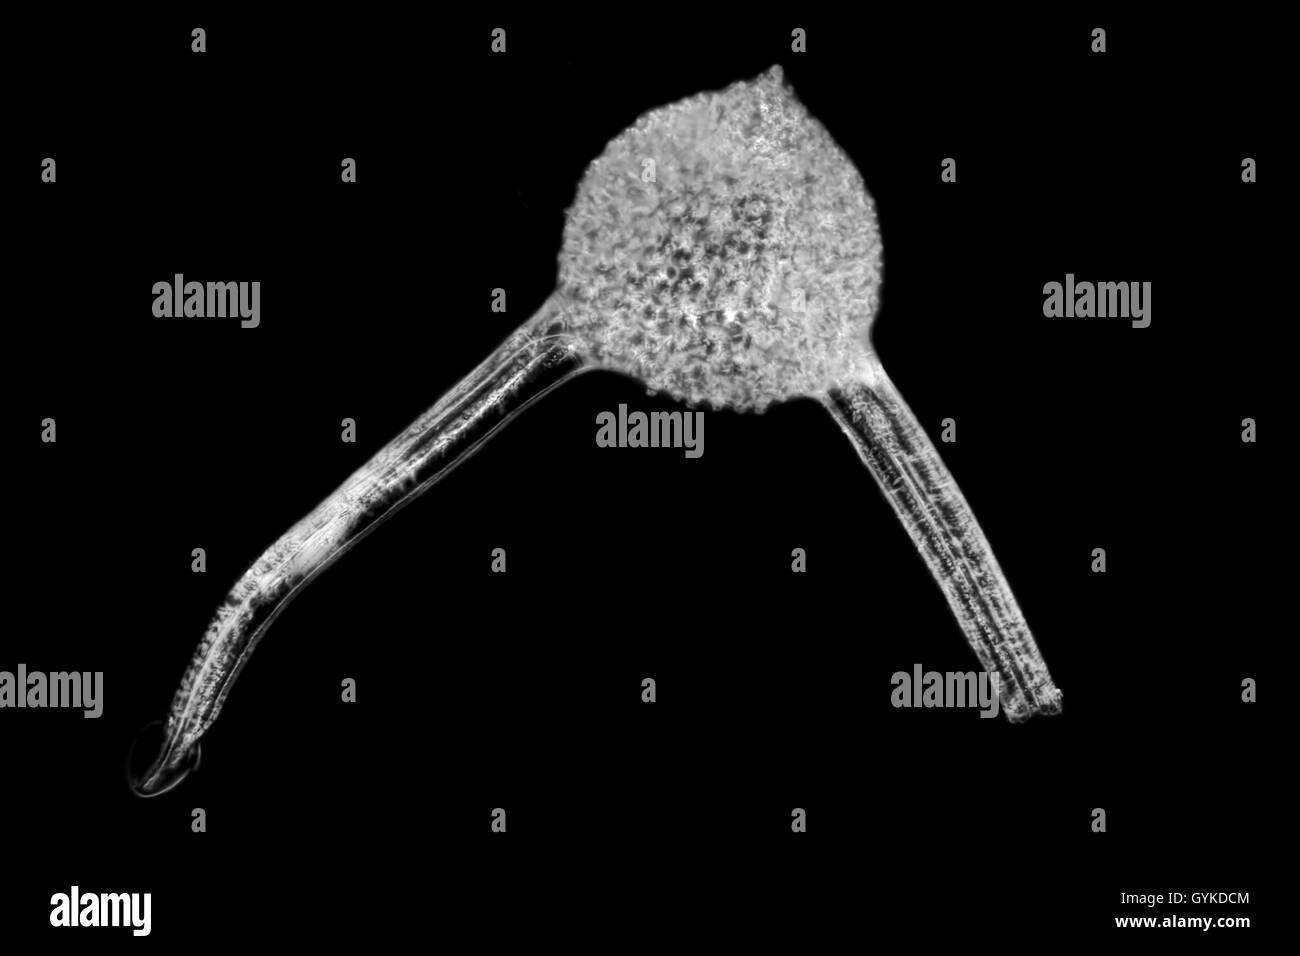 Radiolarien, Strahlentierchen (Radiolaria), fossiles Strahlentierchen von Barbados im Dunkelfeld | radiolari (Radiolaria), fo Foto Stock